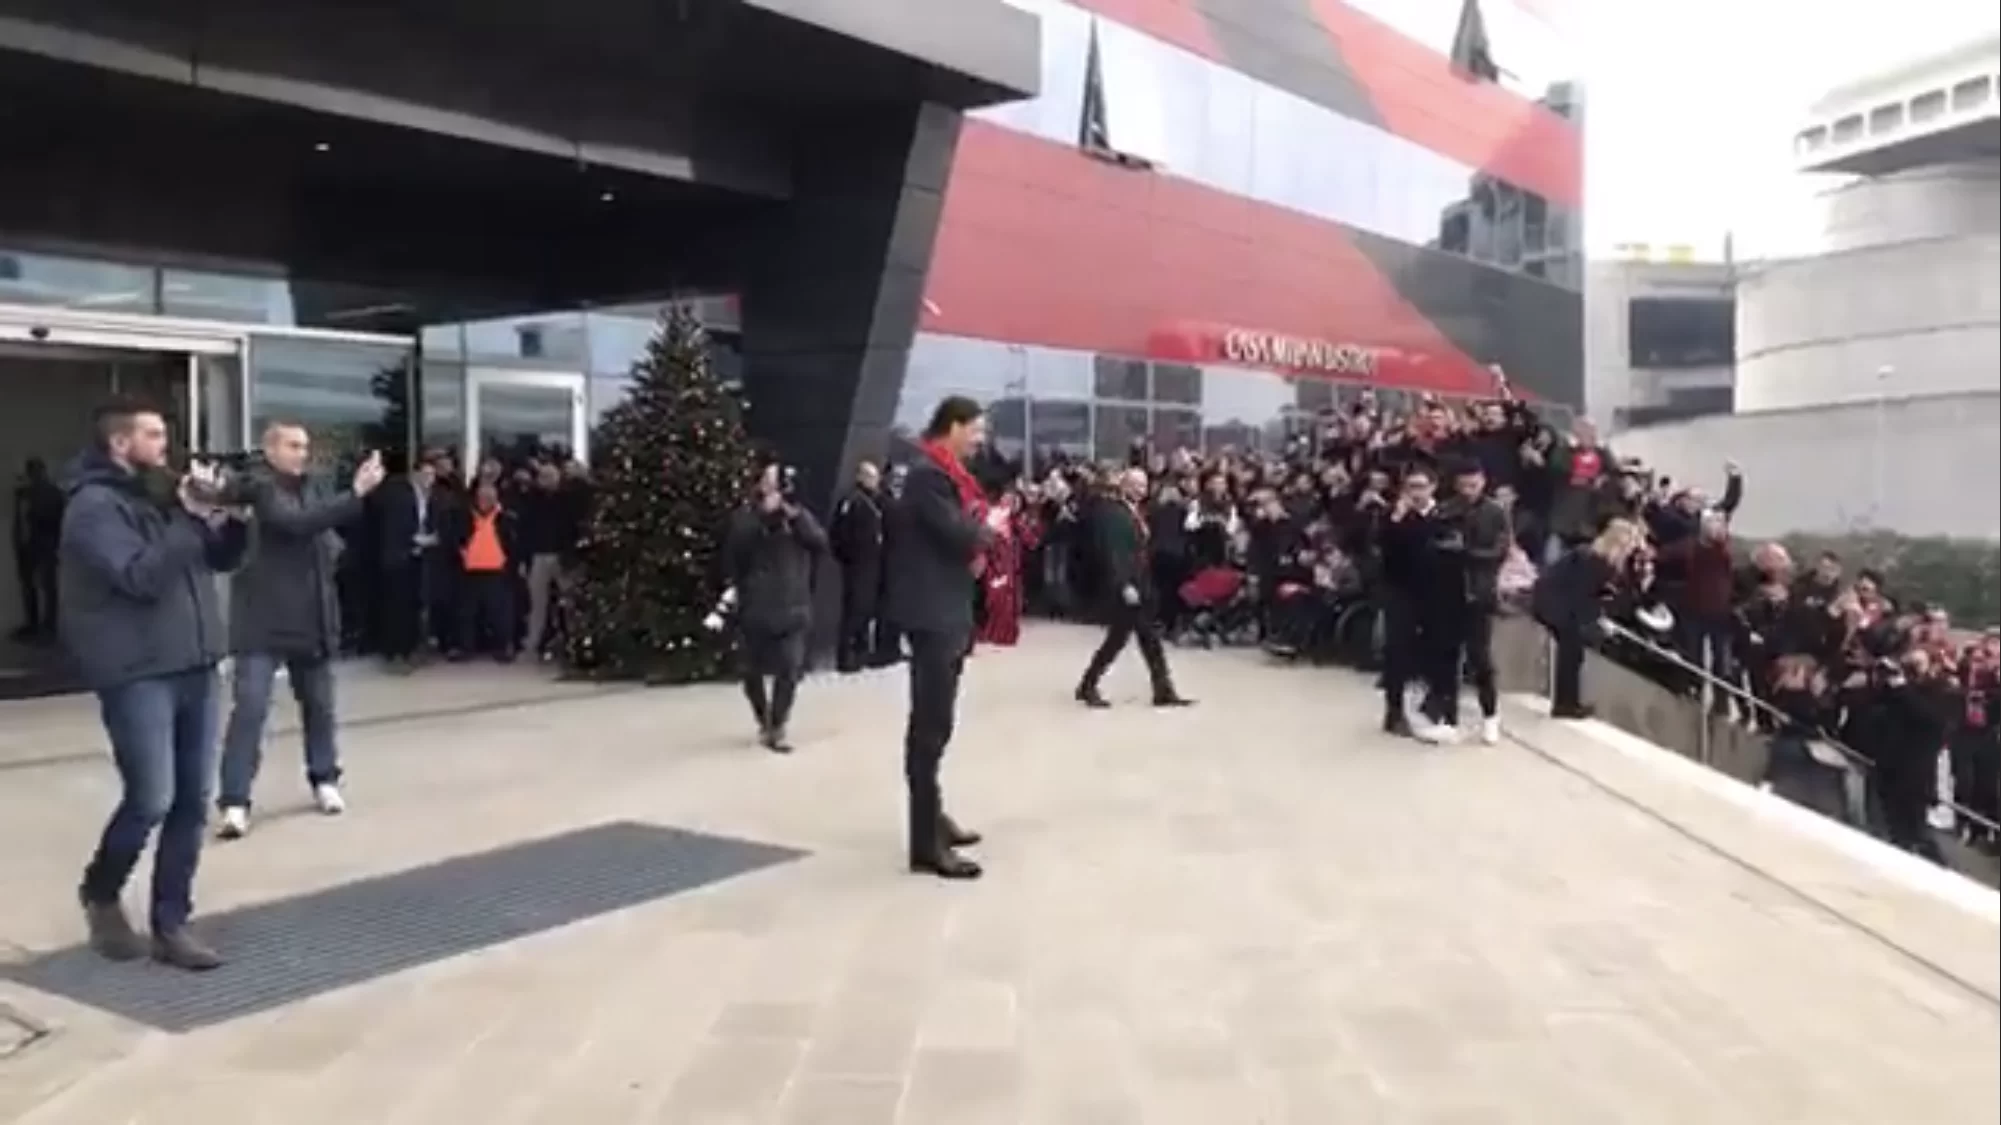 SM VIDEO – Ibrahimovic riabbraccia il suo popolo a Casa Milan